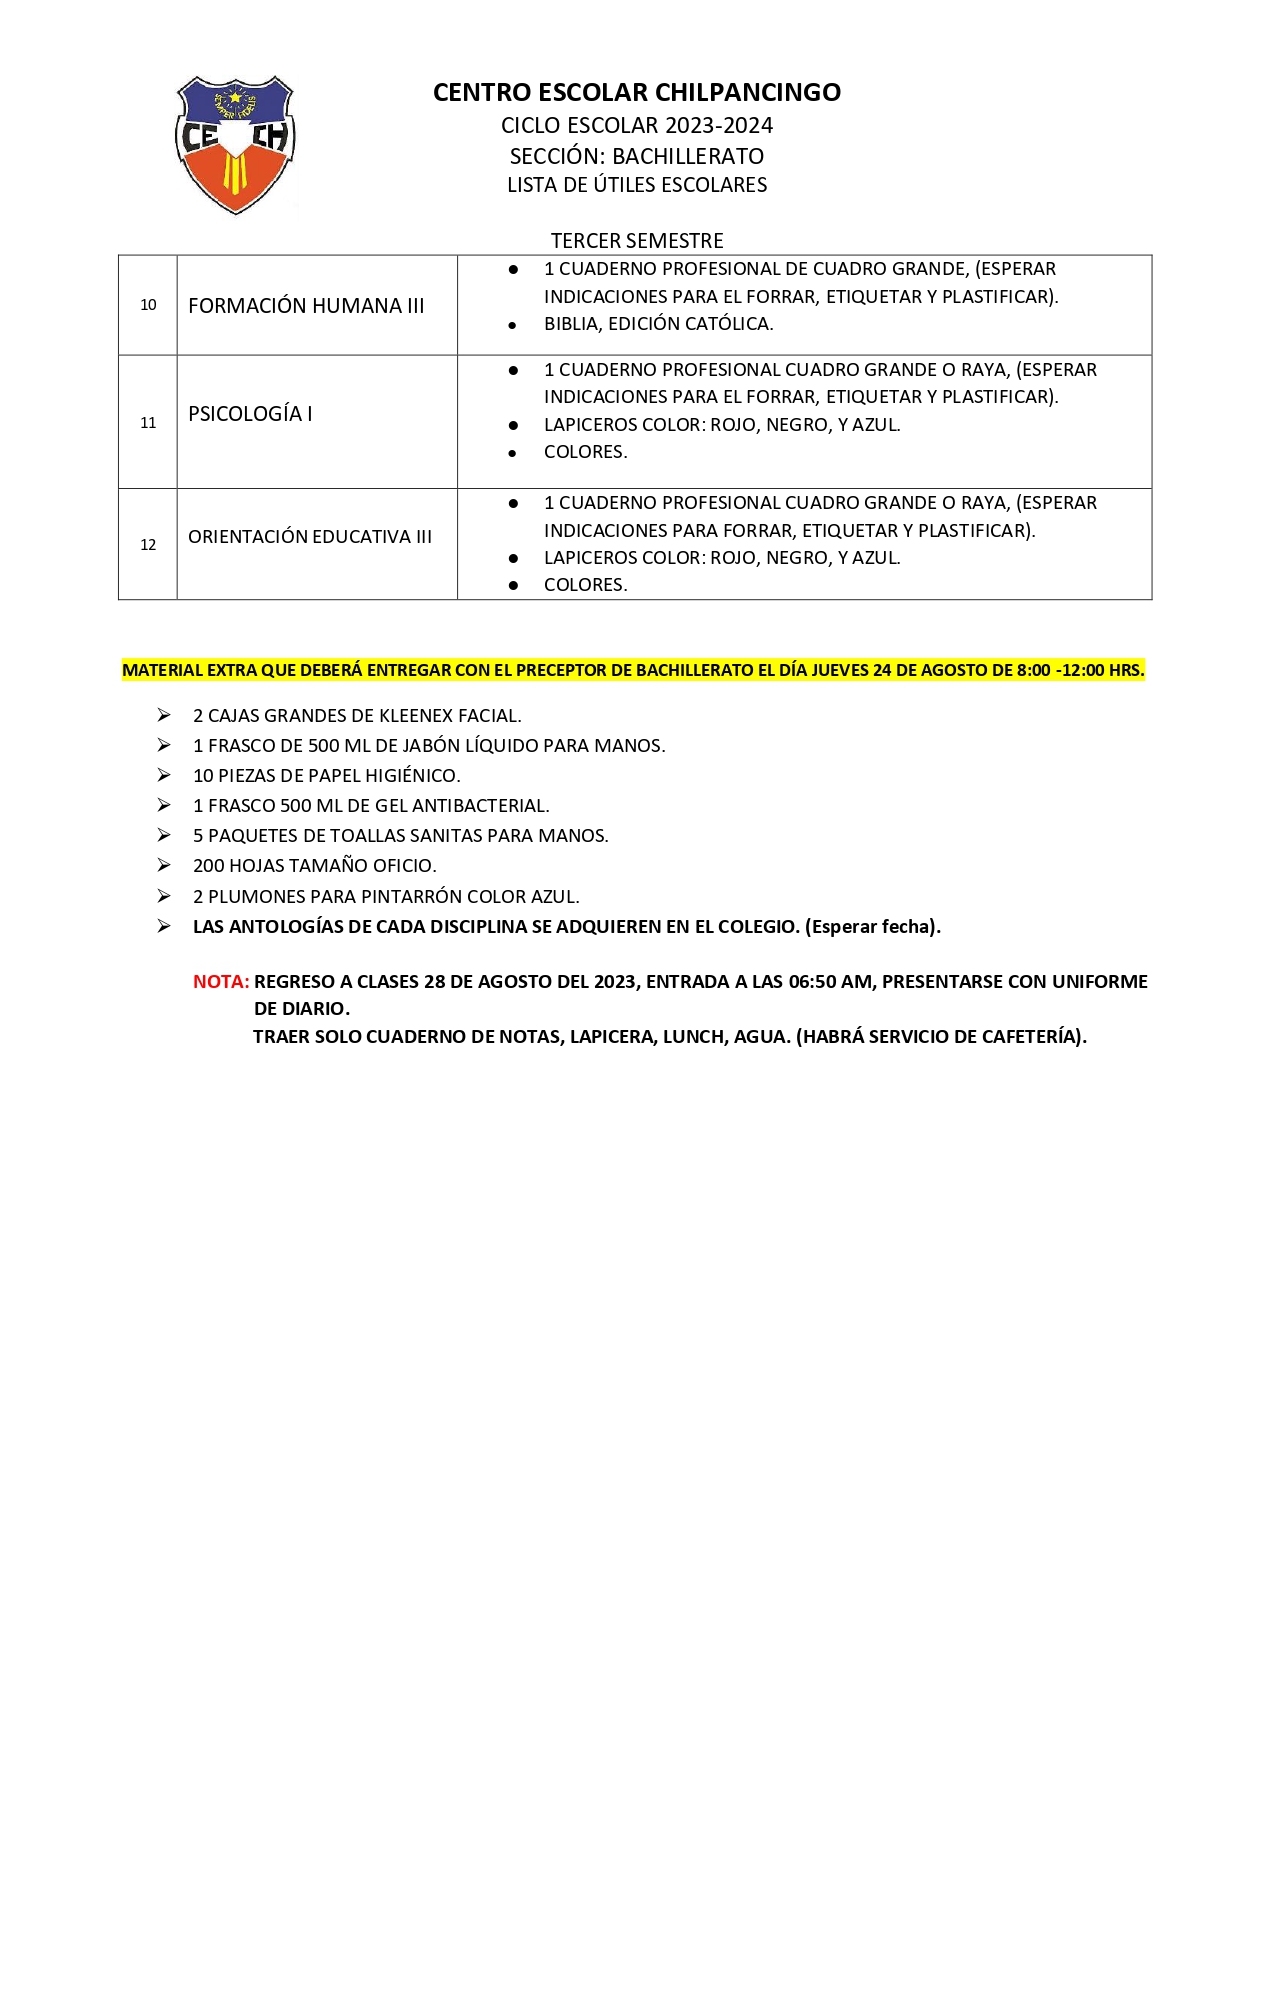 Lista de Útiles Escolares para Educación Básica Ciclo Escolar 2022-2023, Secretaría de Educación Pública, Gobierno